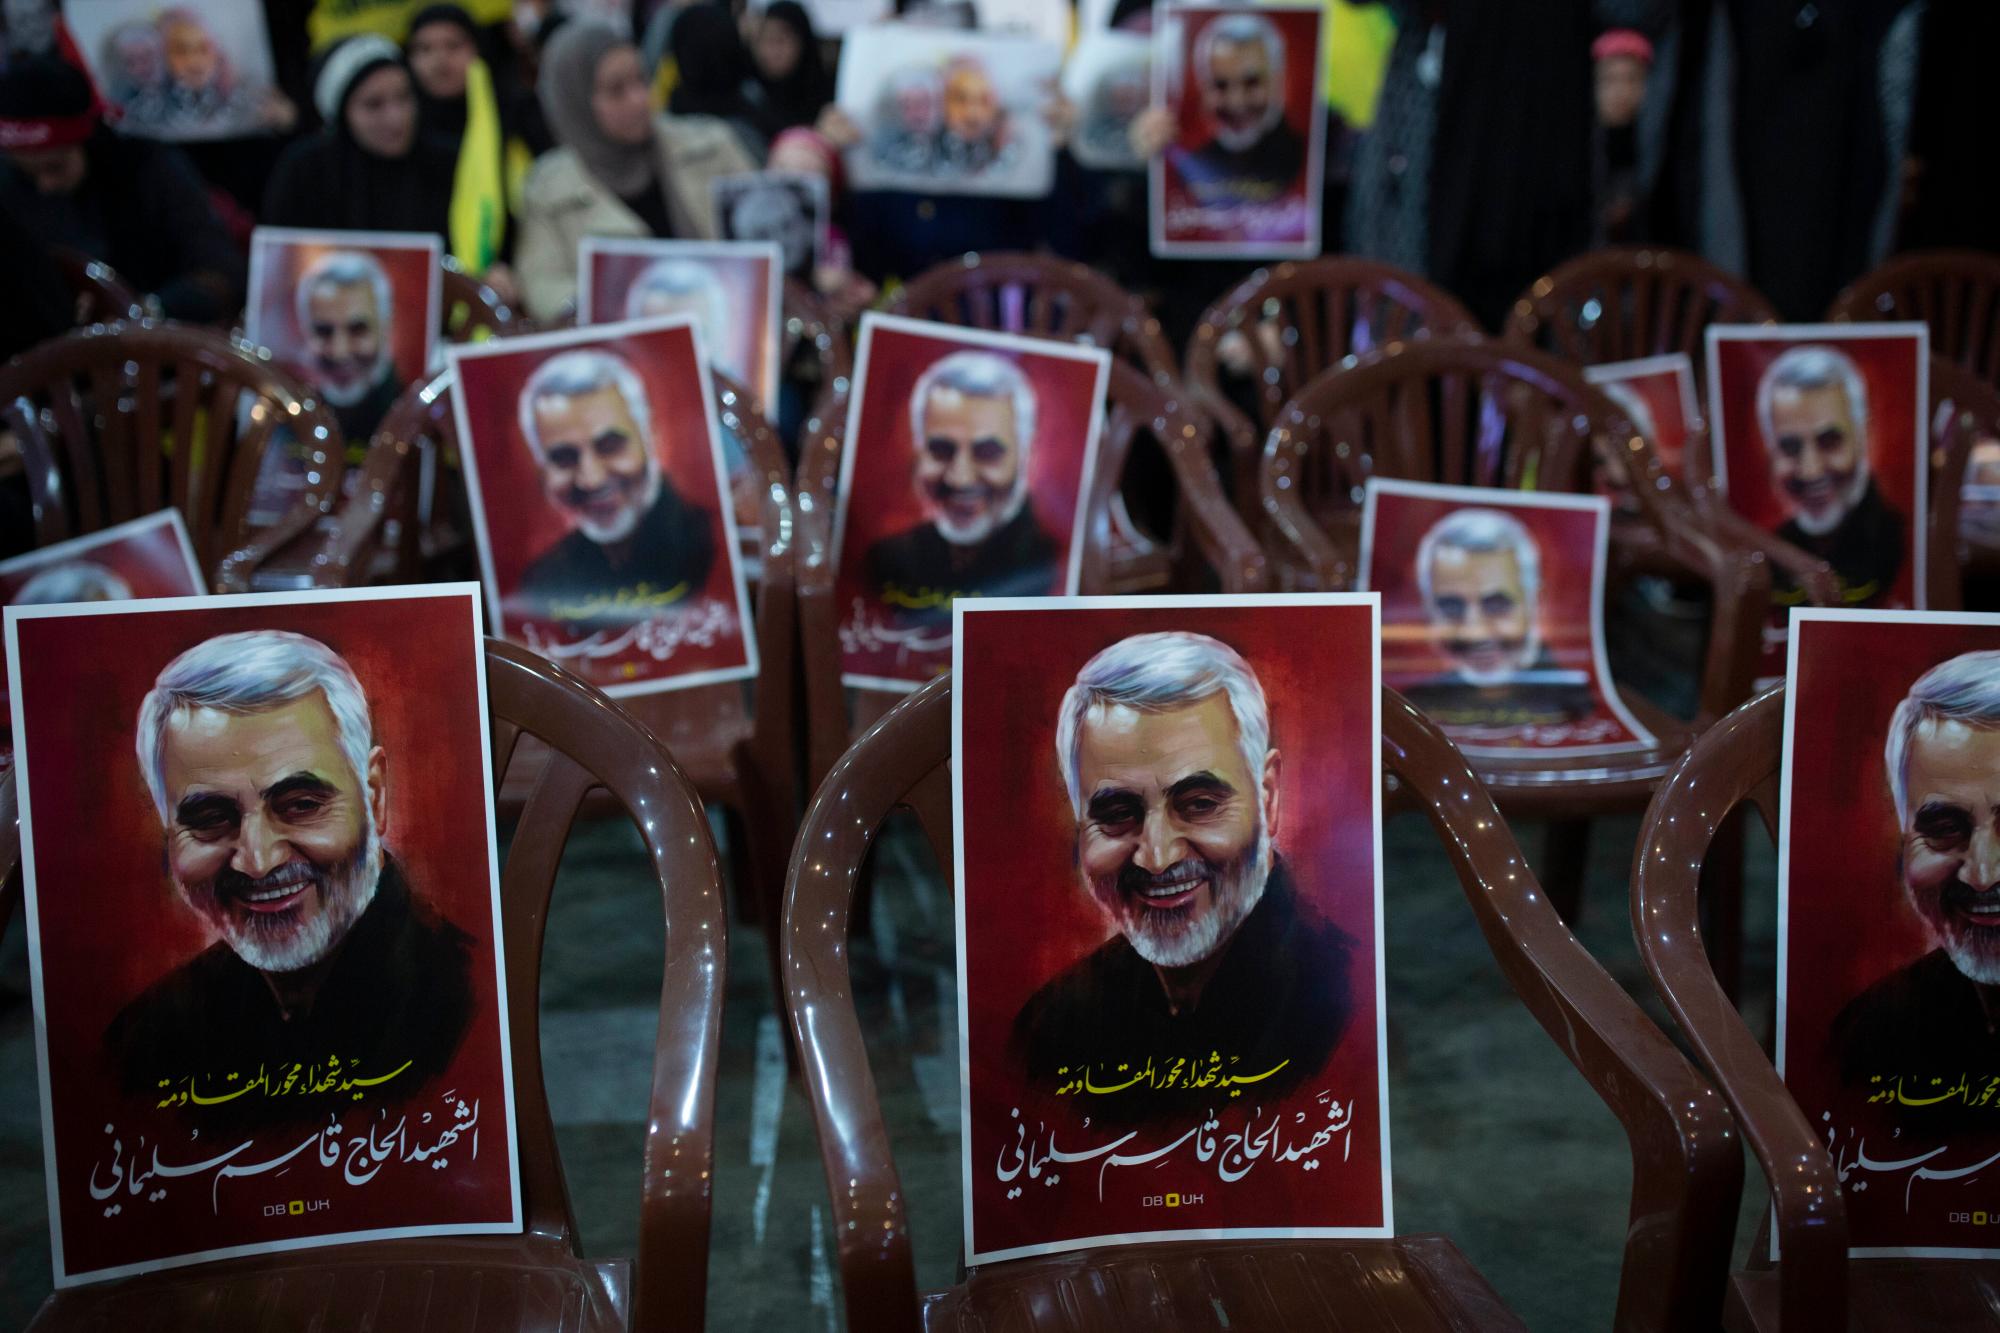 Los carteles de la Guardia Revolucionaria iraní asesinada, general Qassem Soleimani, se colocan en sillas mientras los partidarios del líder de Hezbollah, Sayyed Hassan Nasrallah, se reúnen para su discurso televisado en un suburbio al sur de Beirut, Líbano, el domingo 5 de enero de 2020 luego del ataque aéreo estadounidense en Irak que mató a Soleimani. Los carteles decían: “Sayyad de mártires en el eje de la resistencia. El mártir Hajj Qassem Soleimani”. (Foto AP / Maya Alleruzzo)